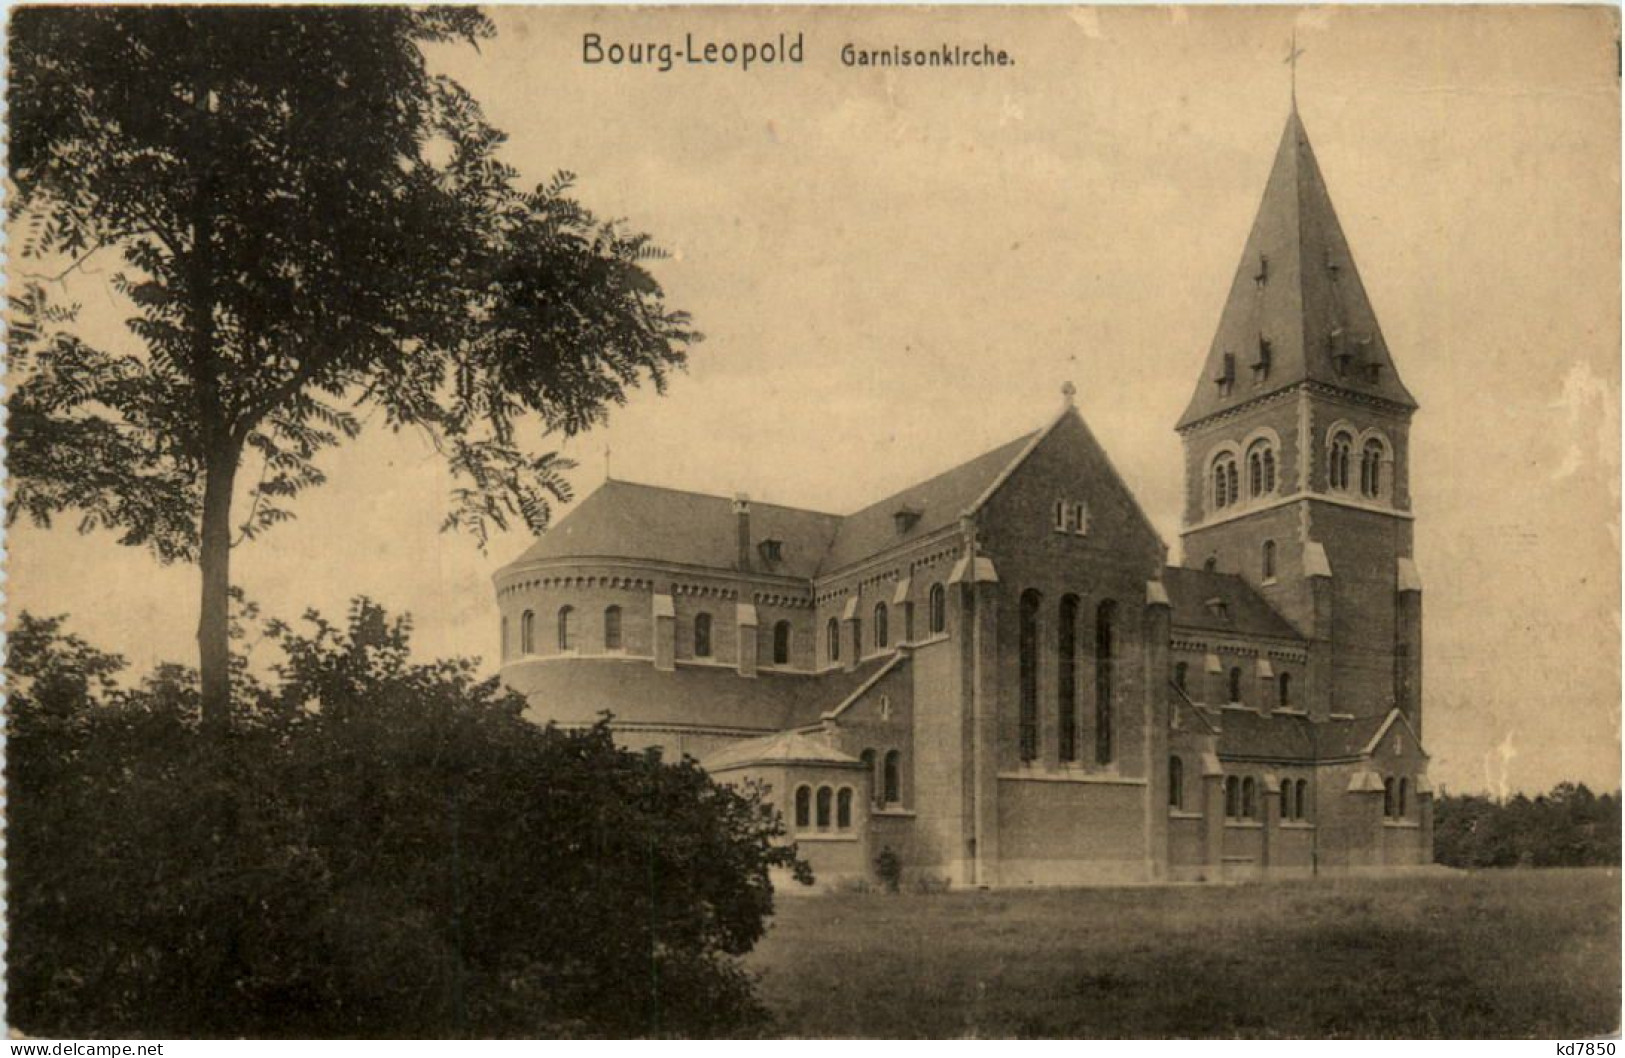 Bourg-Leopold - Garnisonskirche - Leopoldsburg